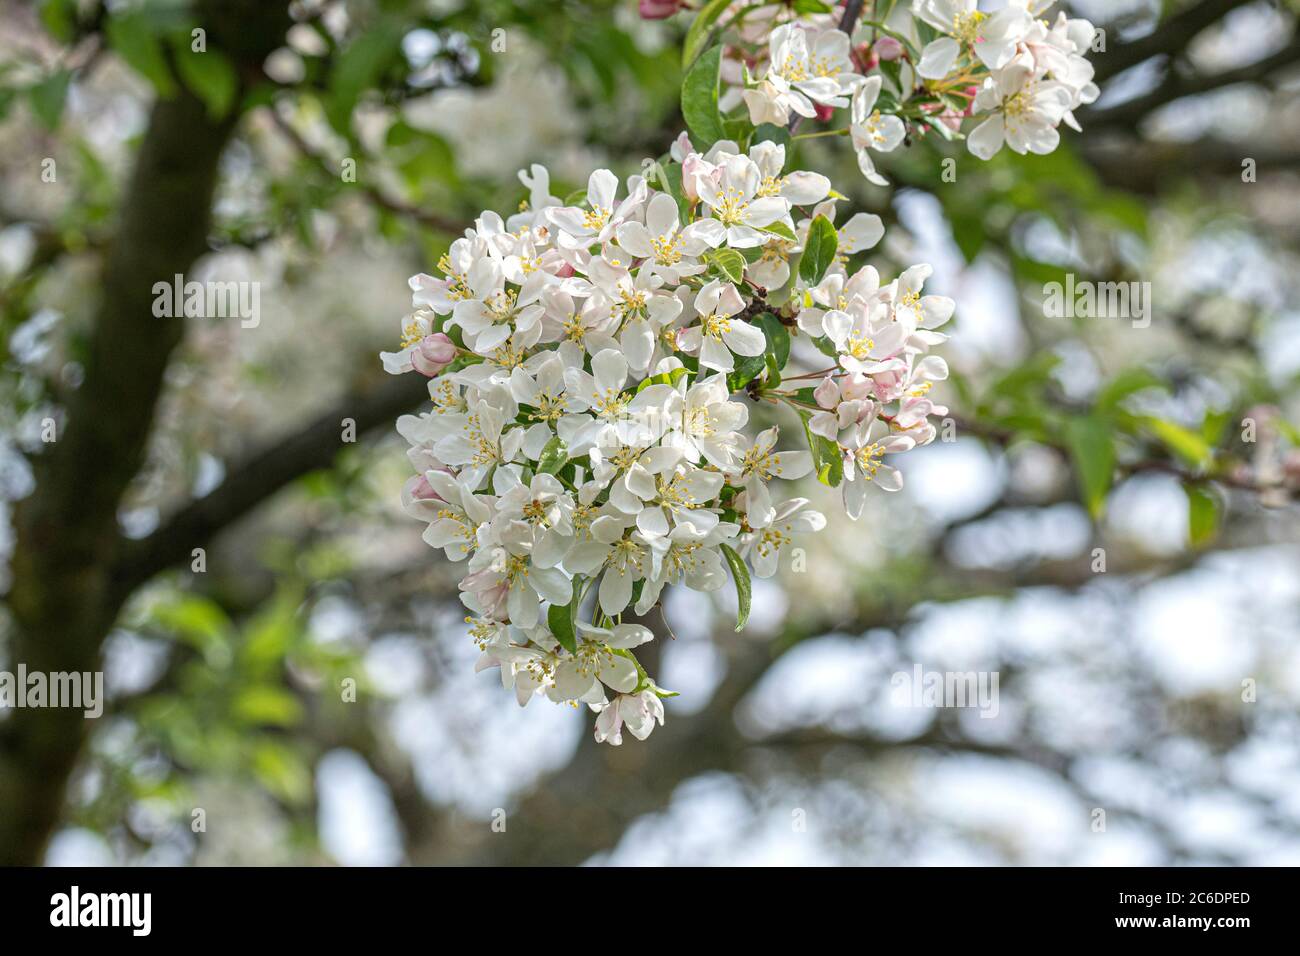 Toringo-Apfel, Malus toringo var. arborescens, Toringo apple, Malus toringo var. Arborescens Stock Photo